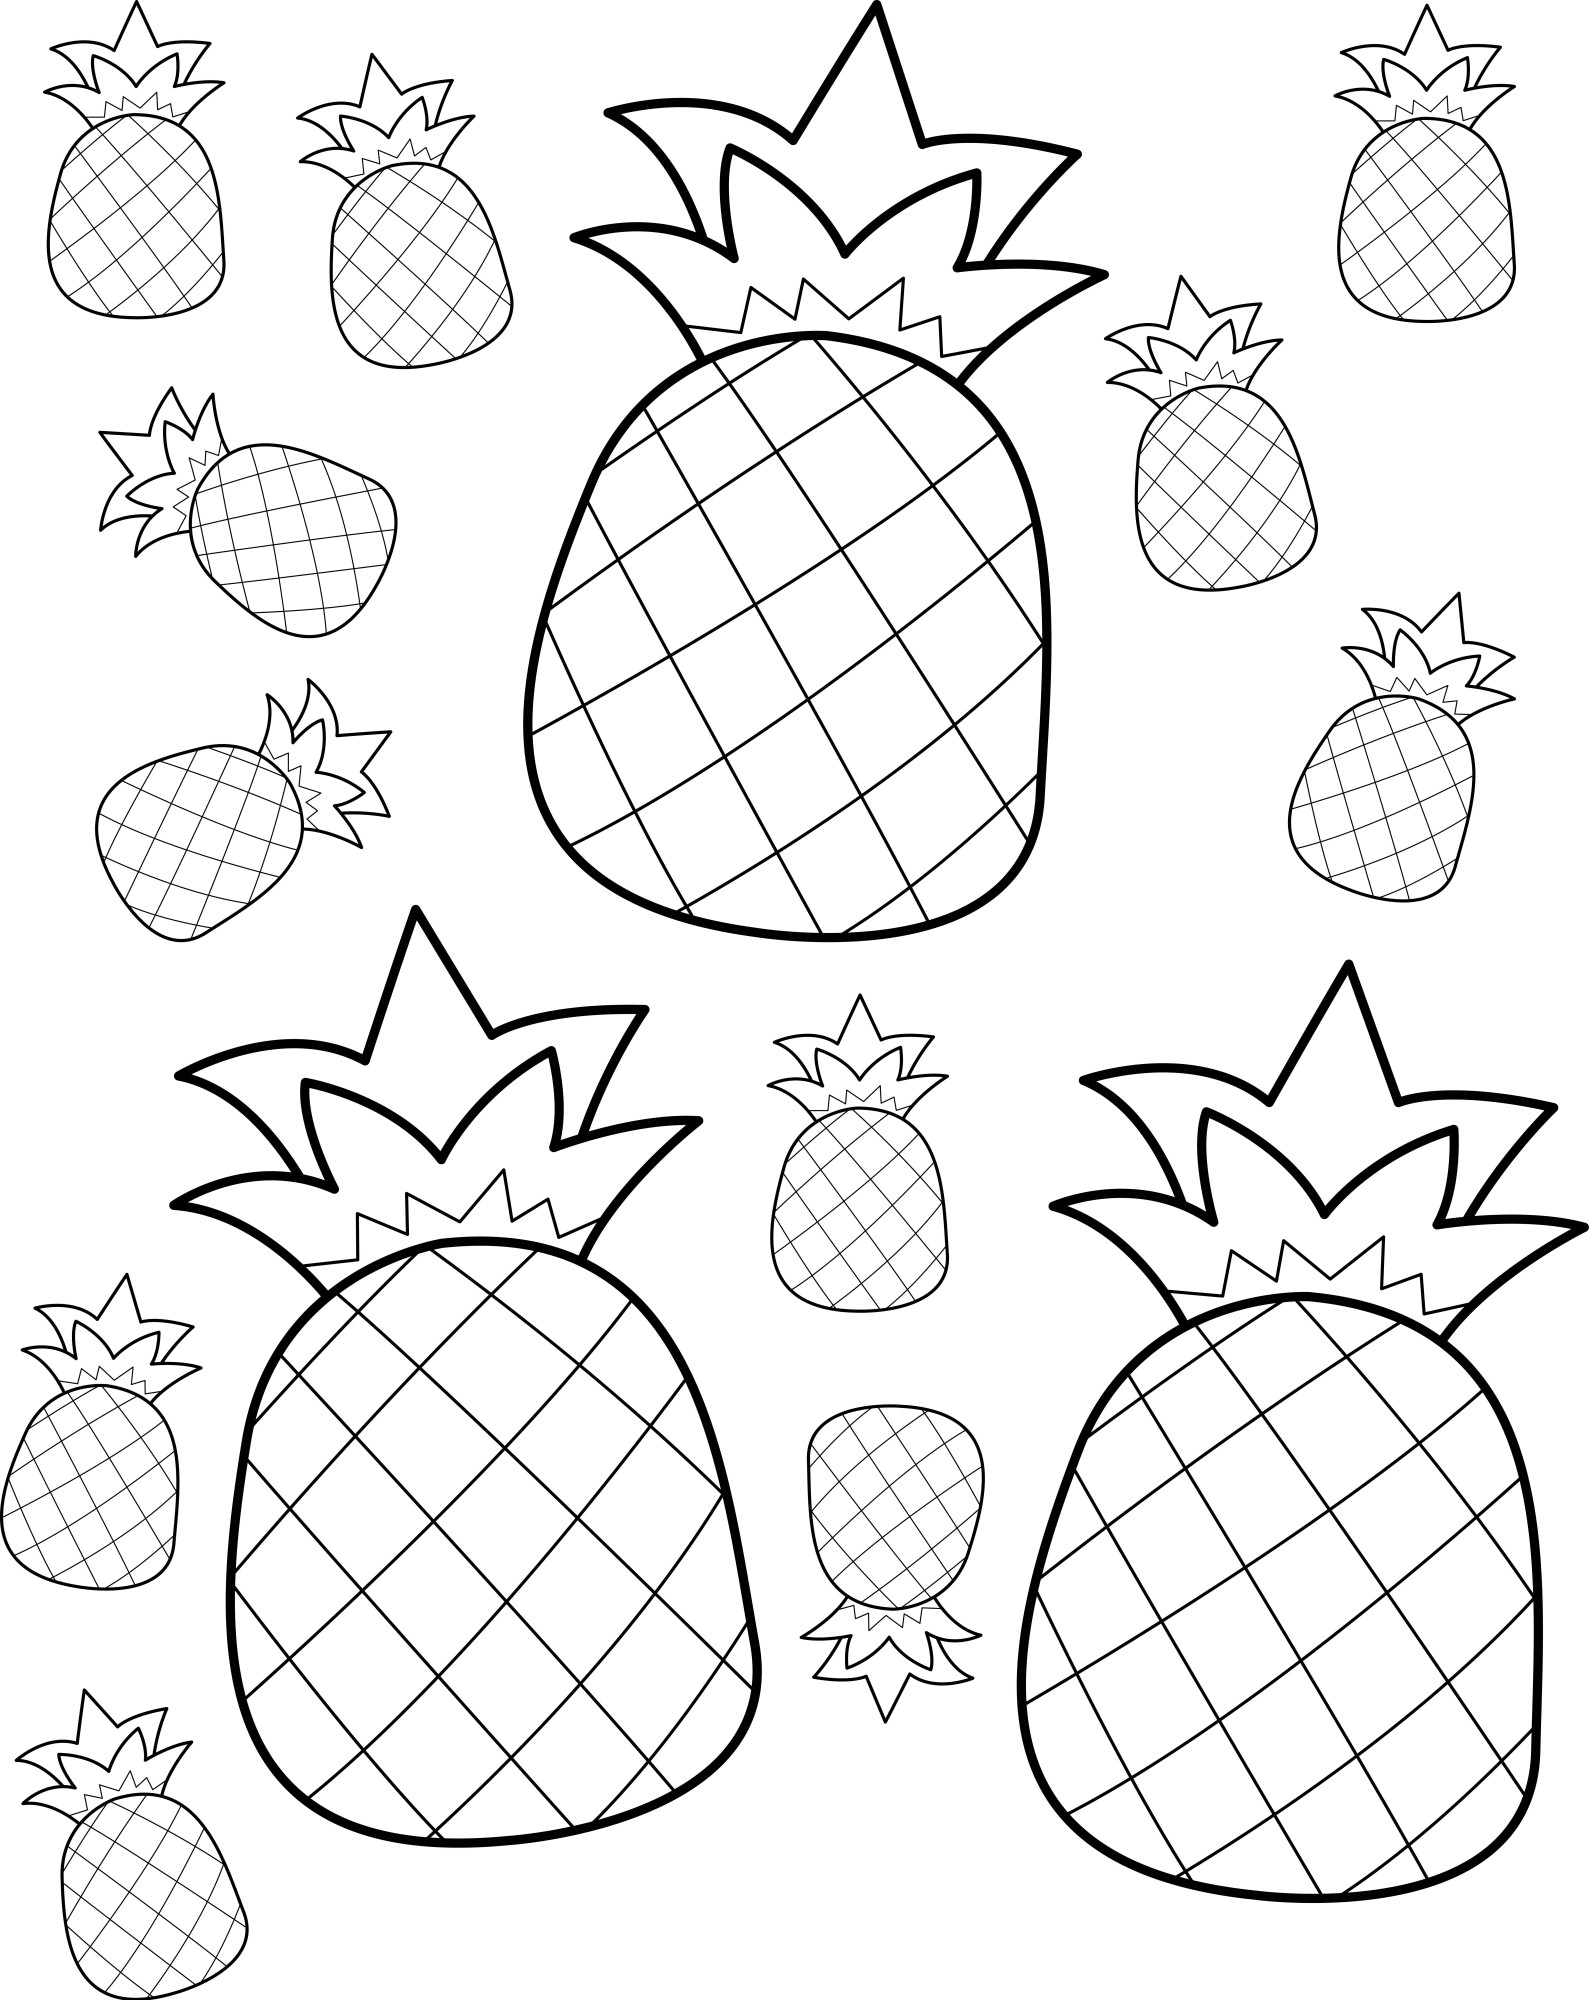 Раскраска для детей: набор фруктов ананасы